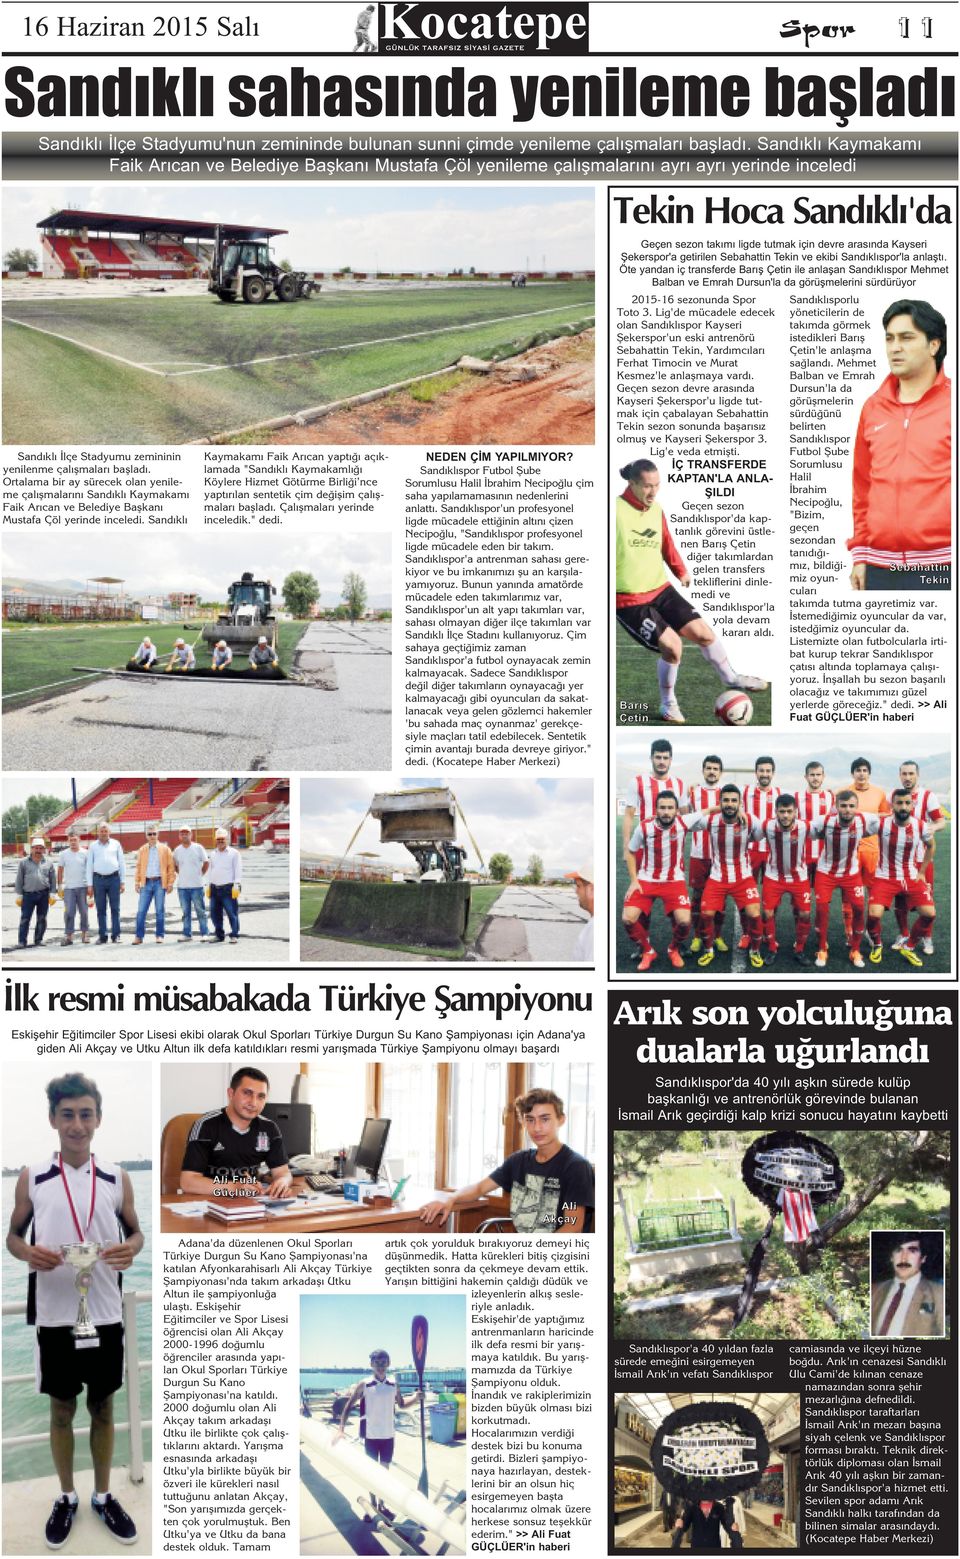 Şekerspor'a getirilen Sebahattin Tekin ve ekibi Sandıklıspor'la anlaştı.